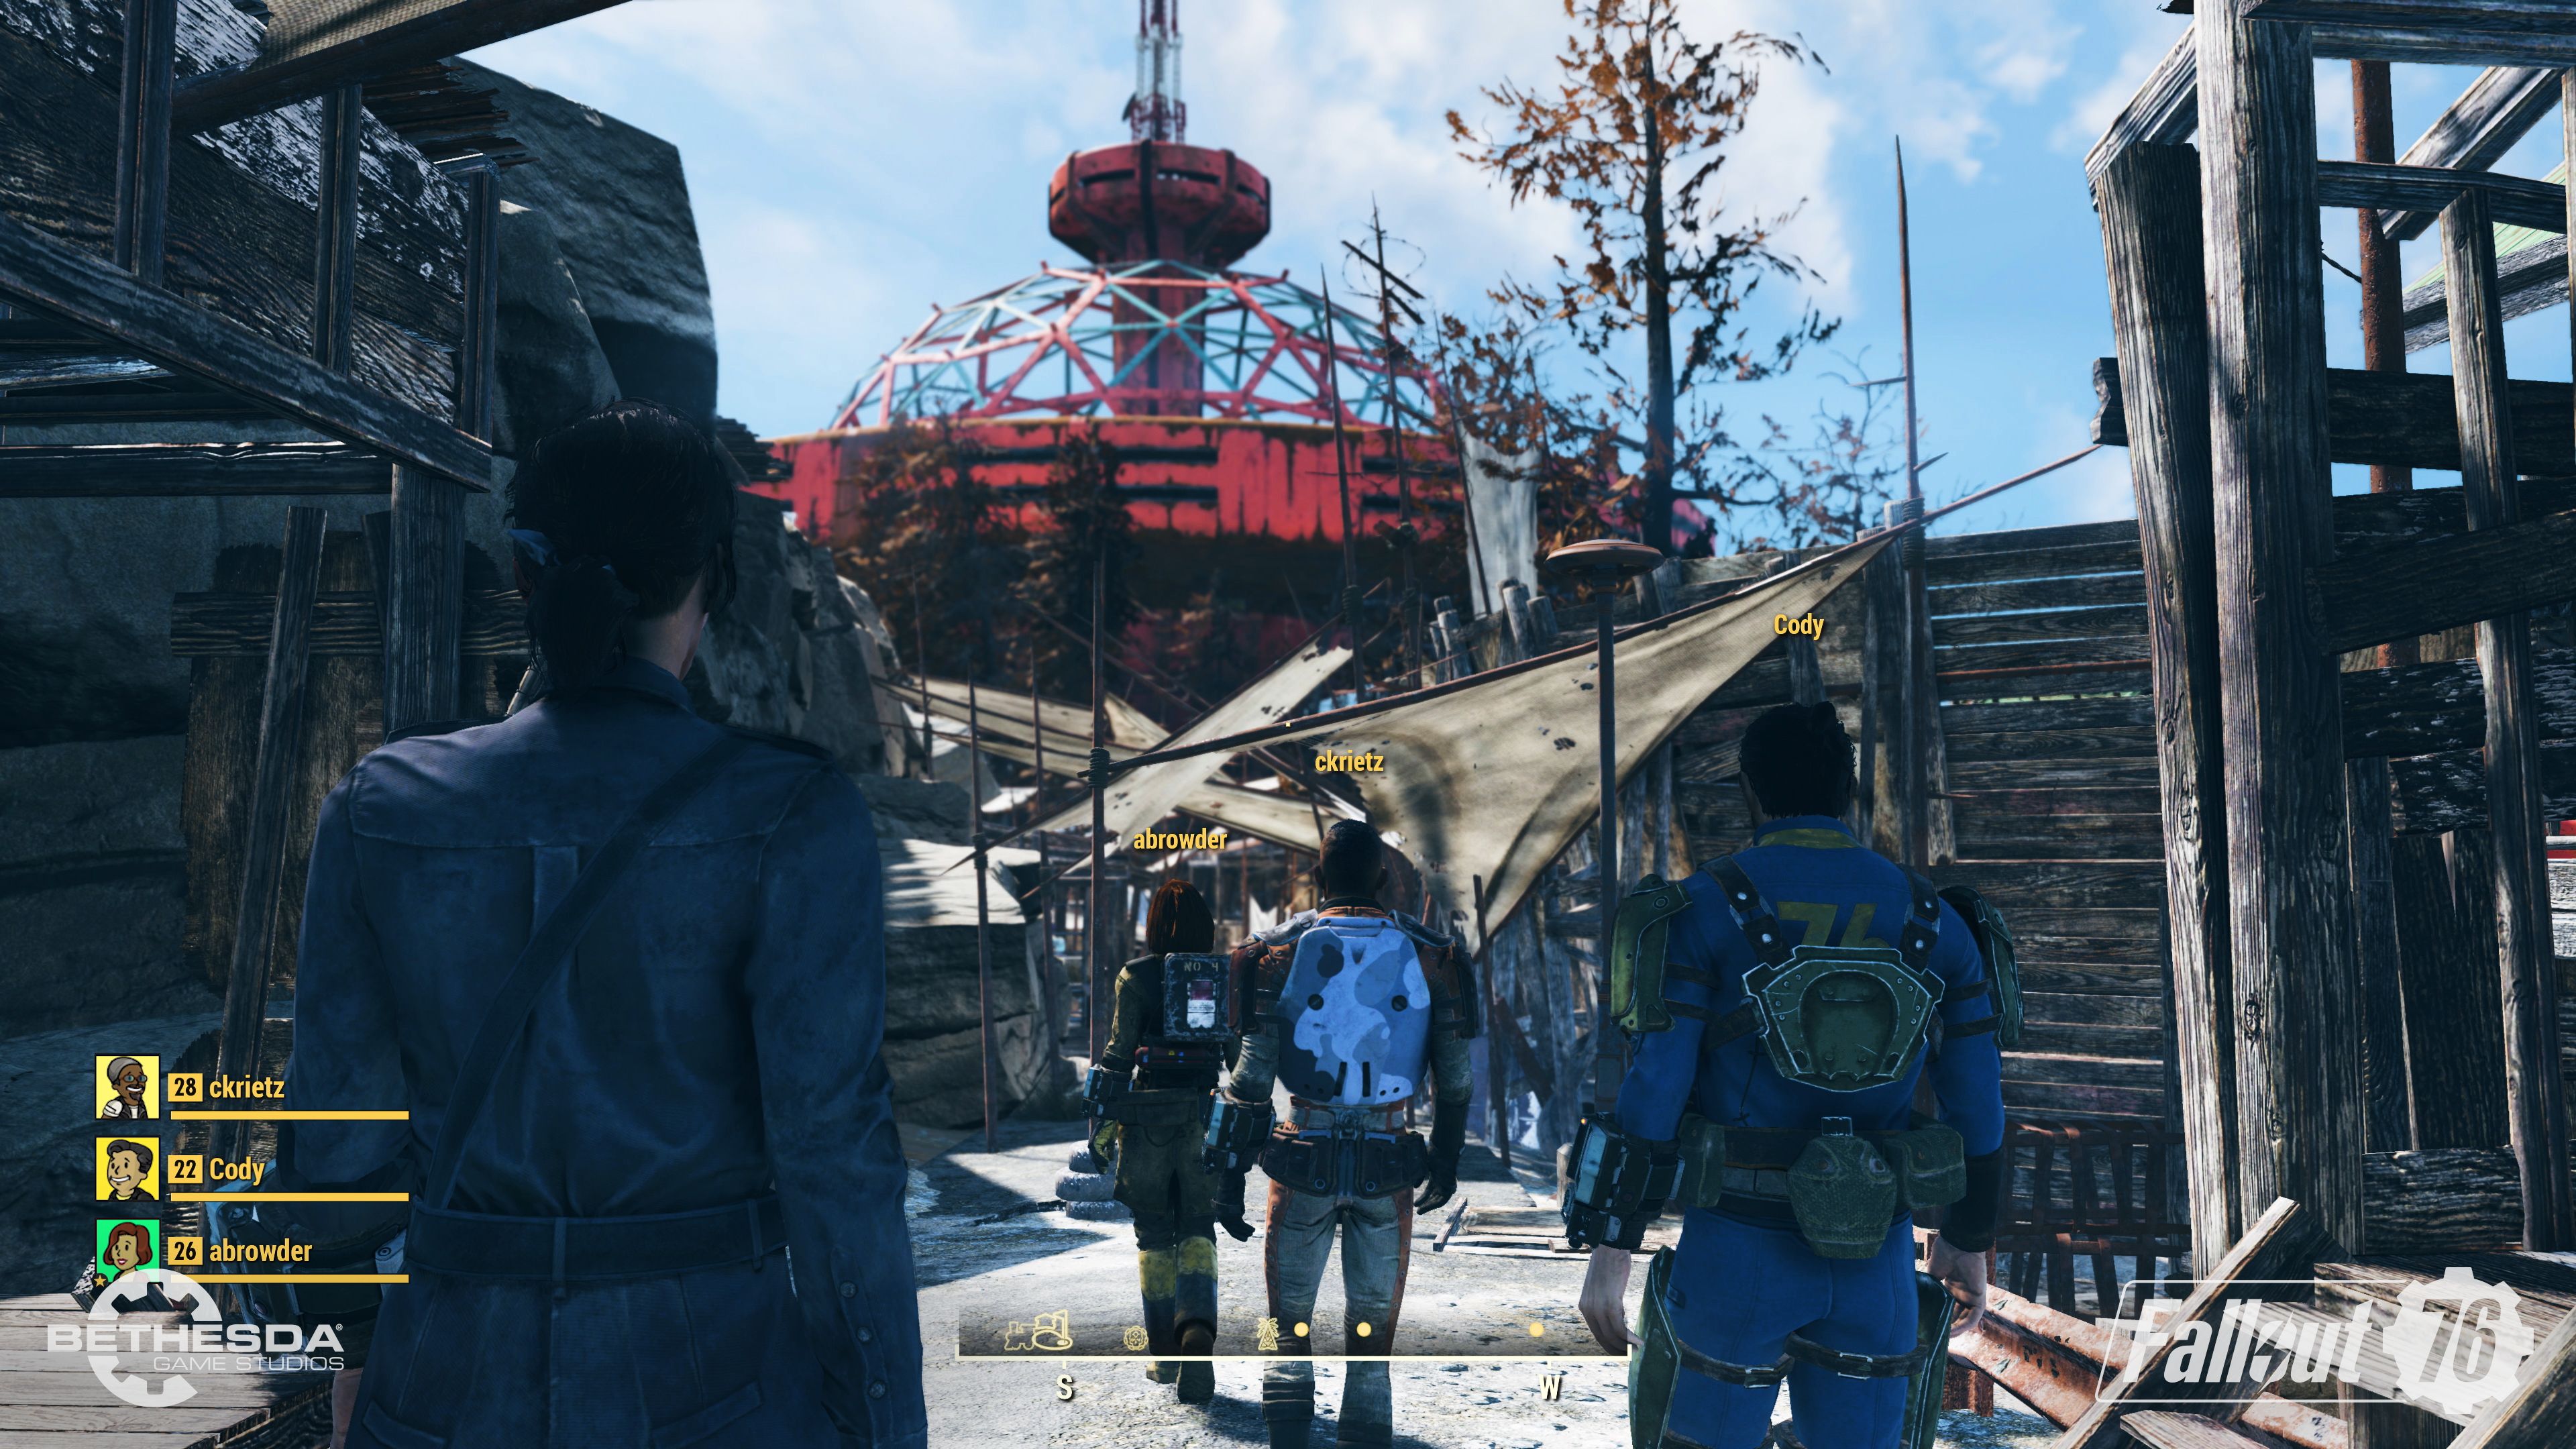 Fallout 76 nos presenta su sistema de habilidades en un interesante nuevo tráiler